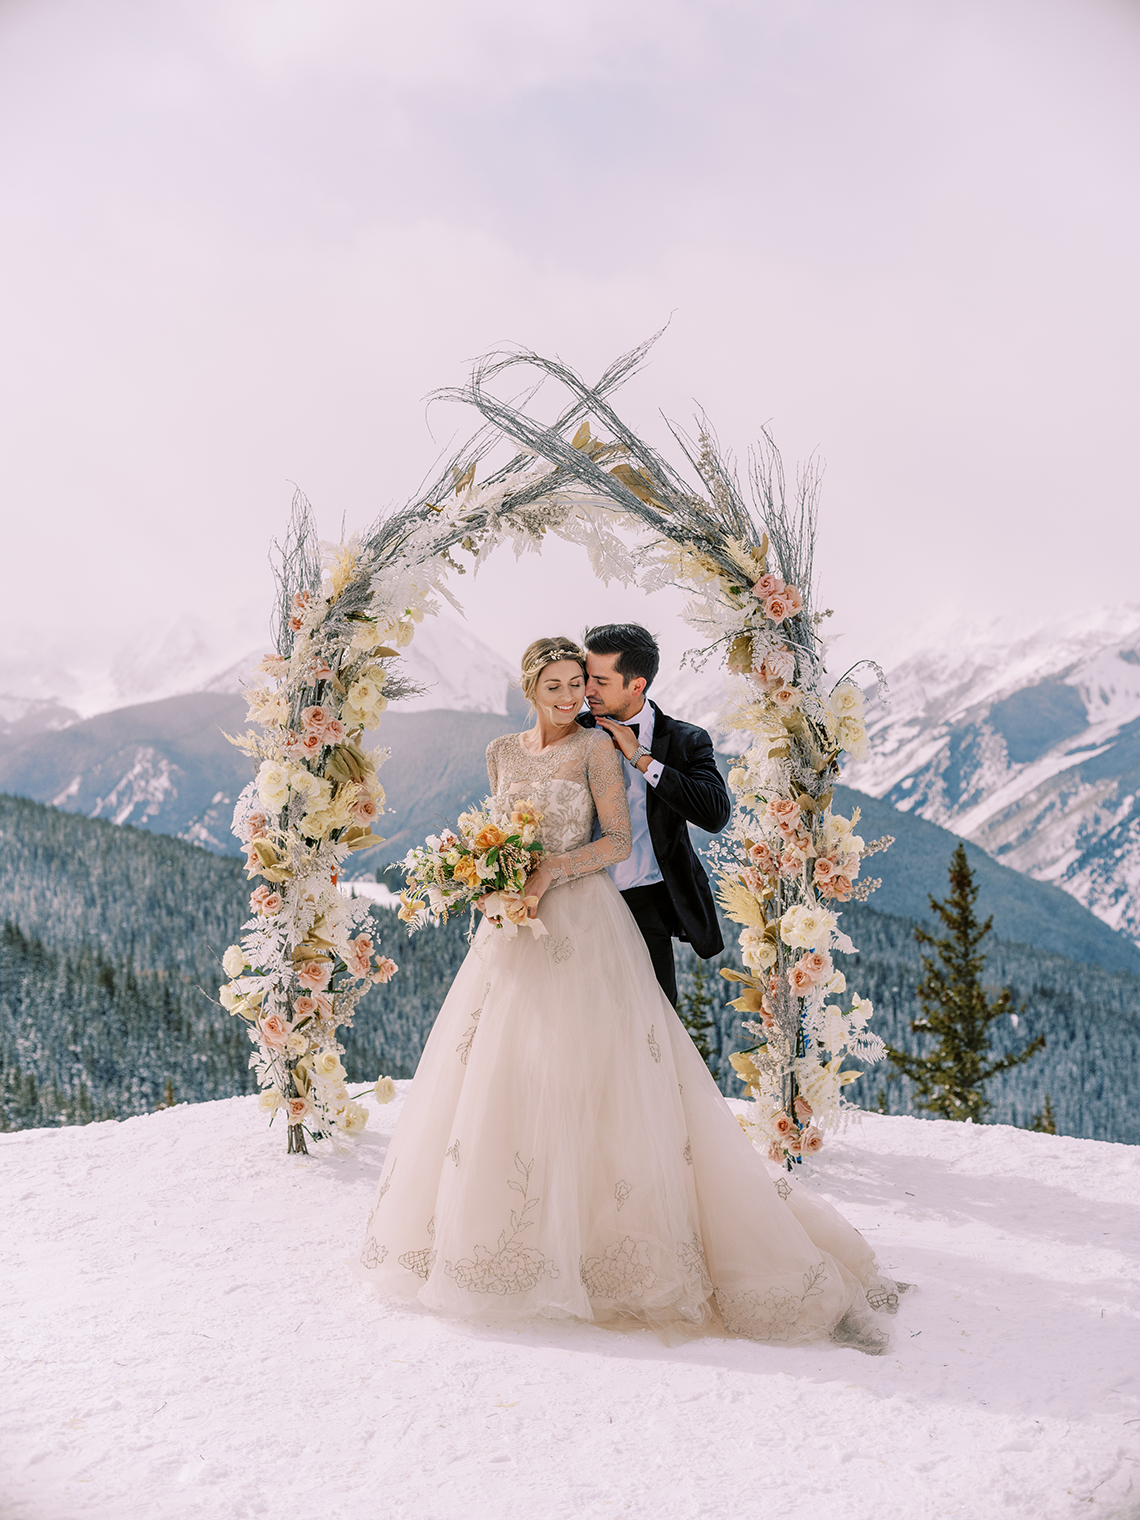 Inspiración para bodas en el país de las maravillas de invierno nevado - La pequeña Nell - Amanda Crean - Eventos de Greenwood - Reflejos de boda 18